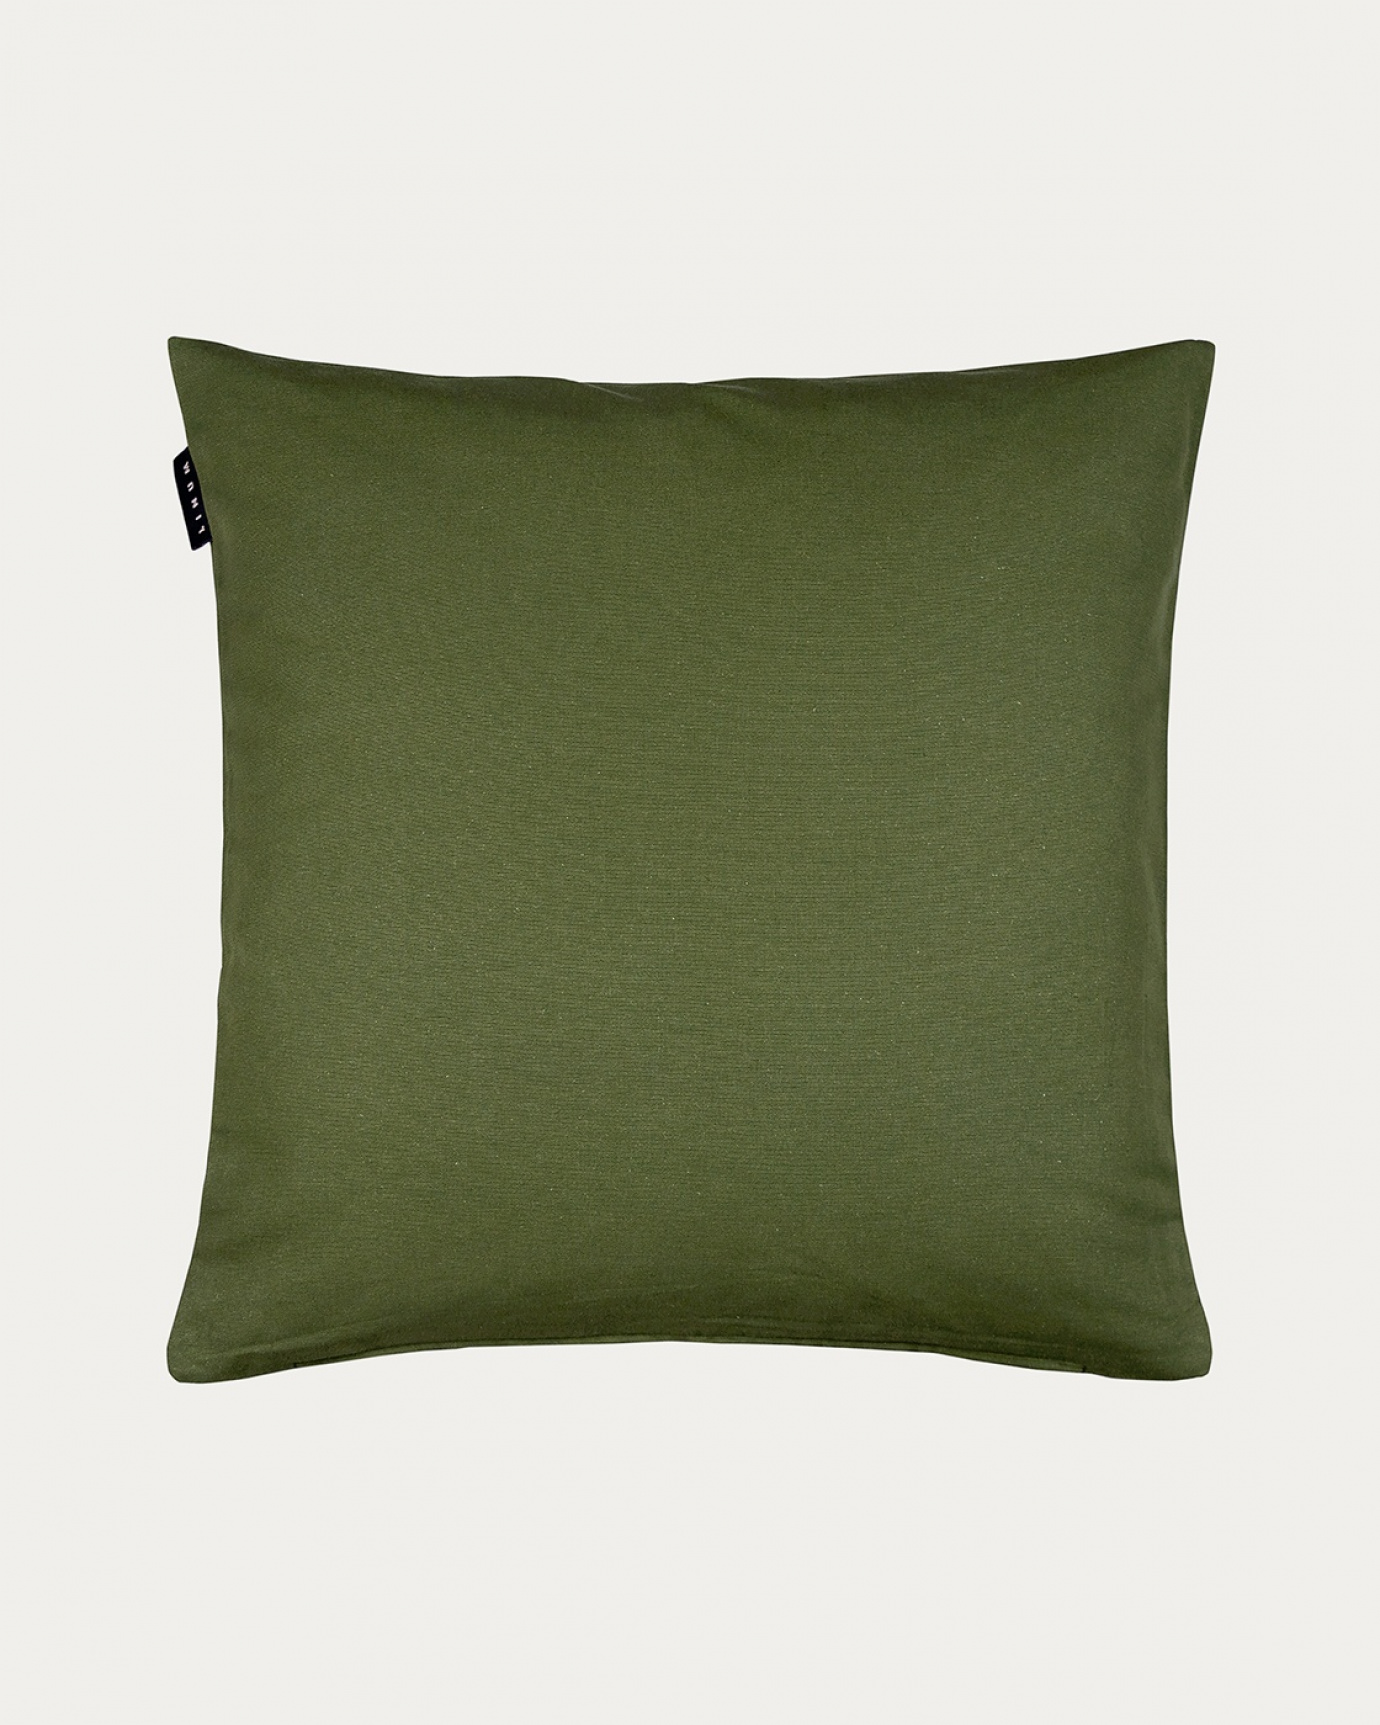 Immagine prodotto verde oliva scuro ANNABELL copricuscini in morbido cotone di LINUM DESIGN. Dimensioni 50x50 cm.